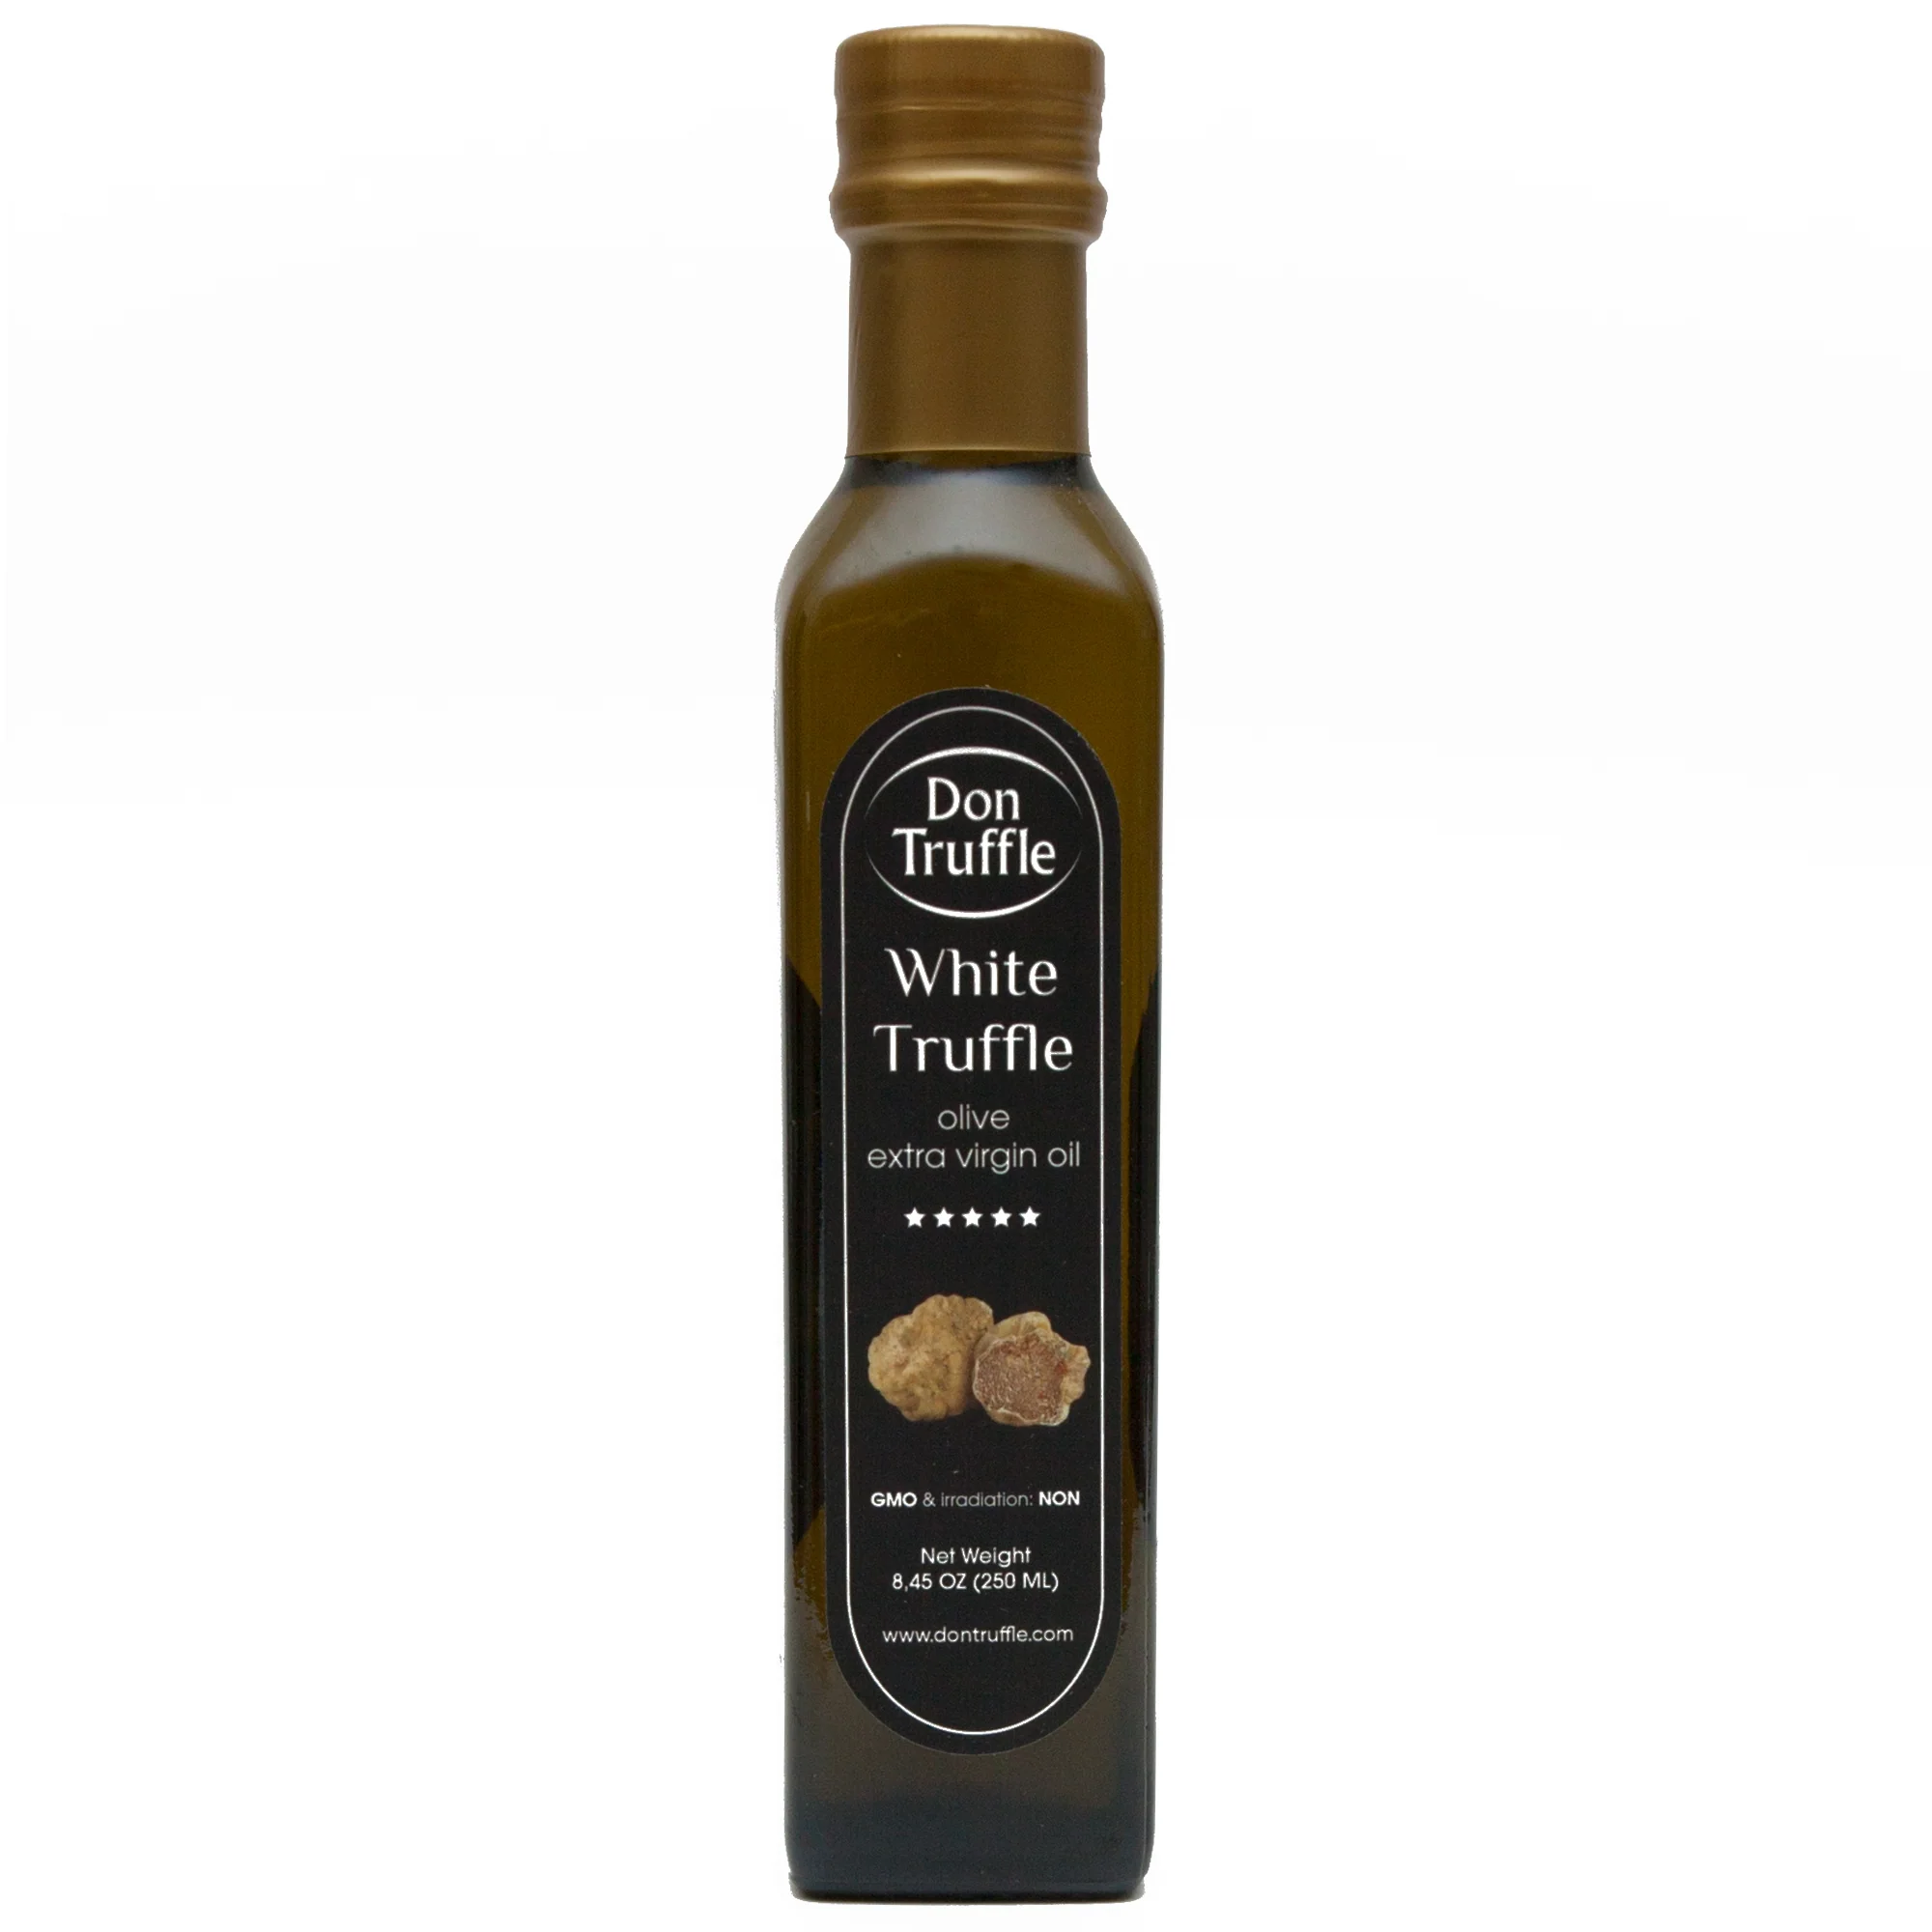 White Truffle olive oil 8,45 OZ (250ml)